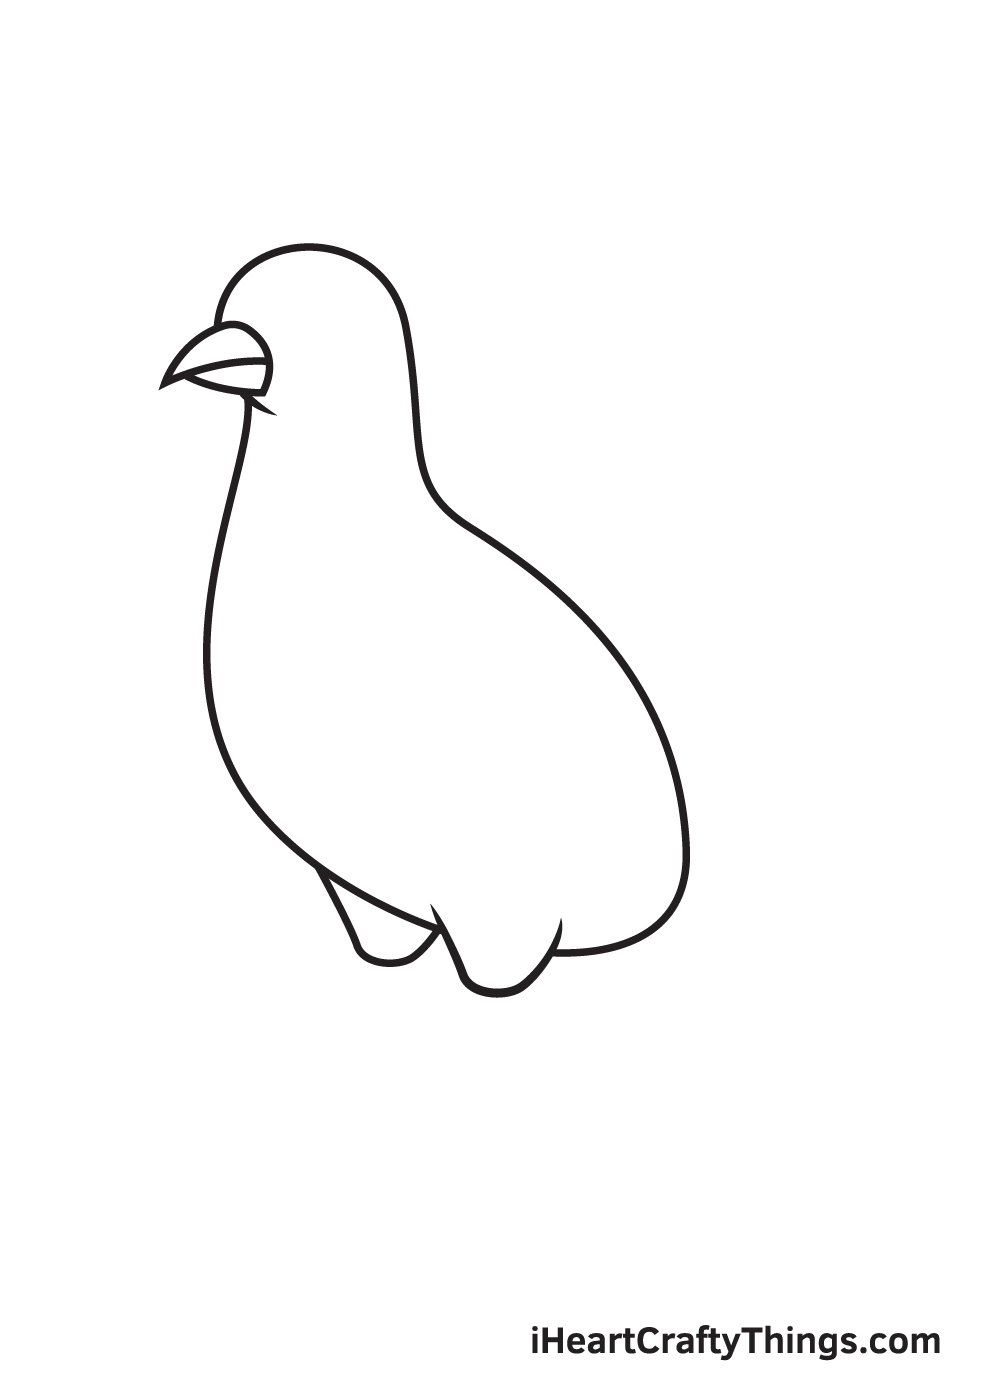 VẼ CON HEO - BƯỚC 5 - Hướng dẫn cách vẽ chim bồ câu đơn giản với 9 bước cơ bản